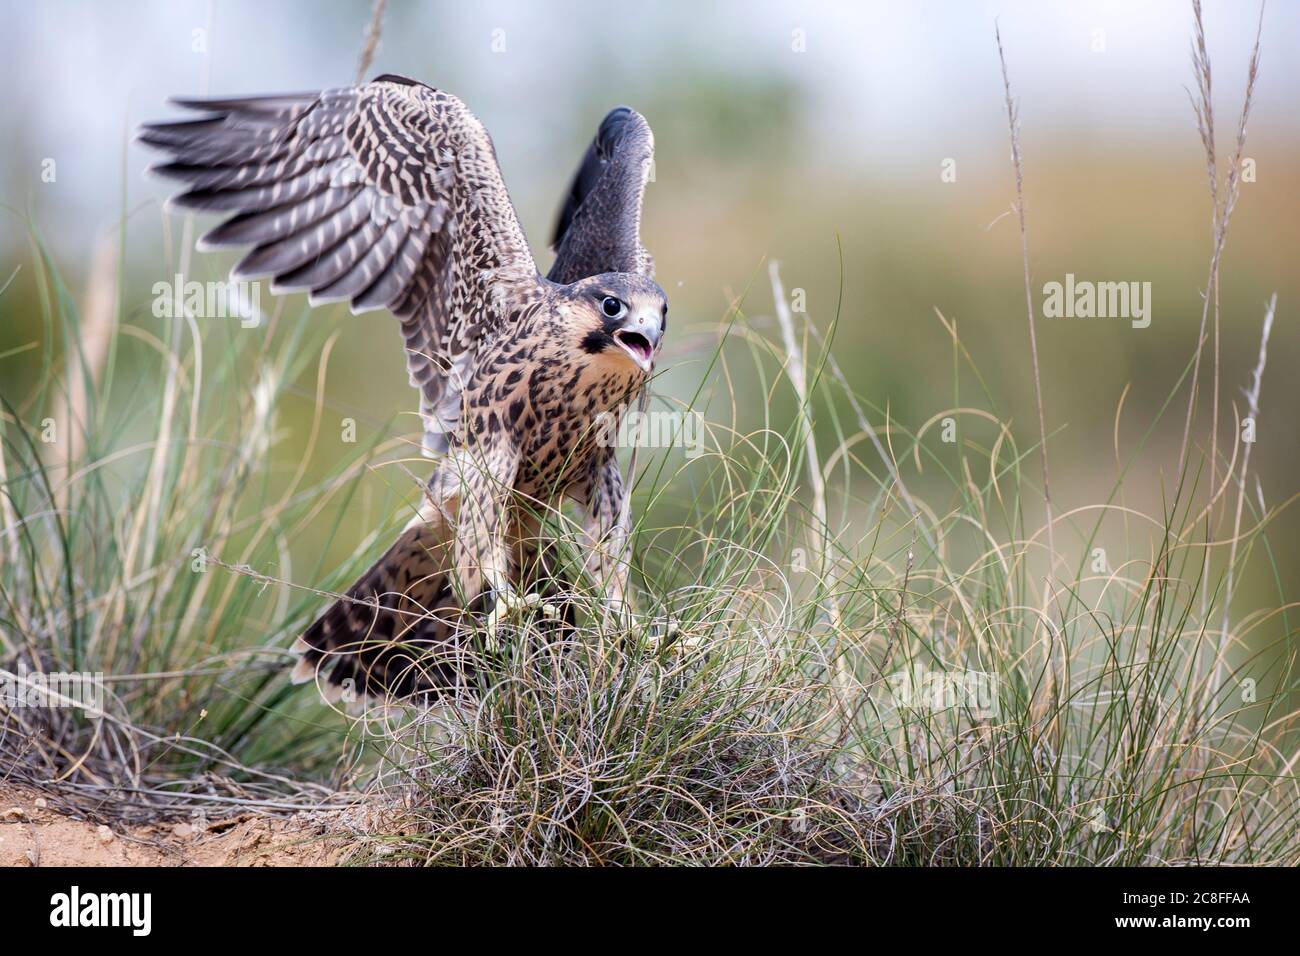 Falco peregrino mediterraneo (Falco peregrinus brookei, Falco brookei), atterraggio immaturo di uccelli a terra, vista frontale, Spagna Foto Stock